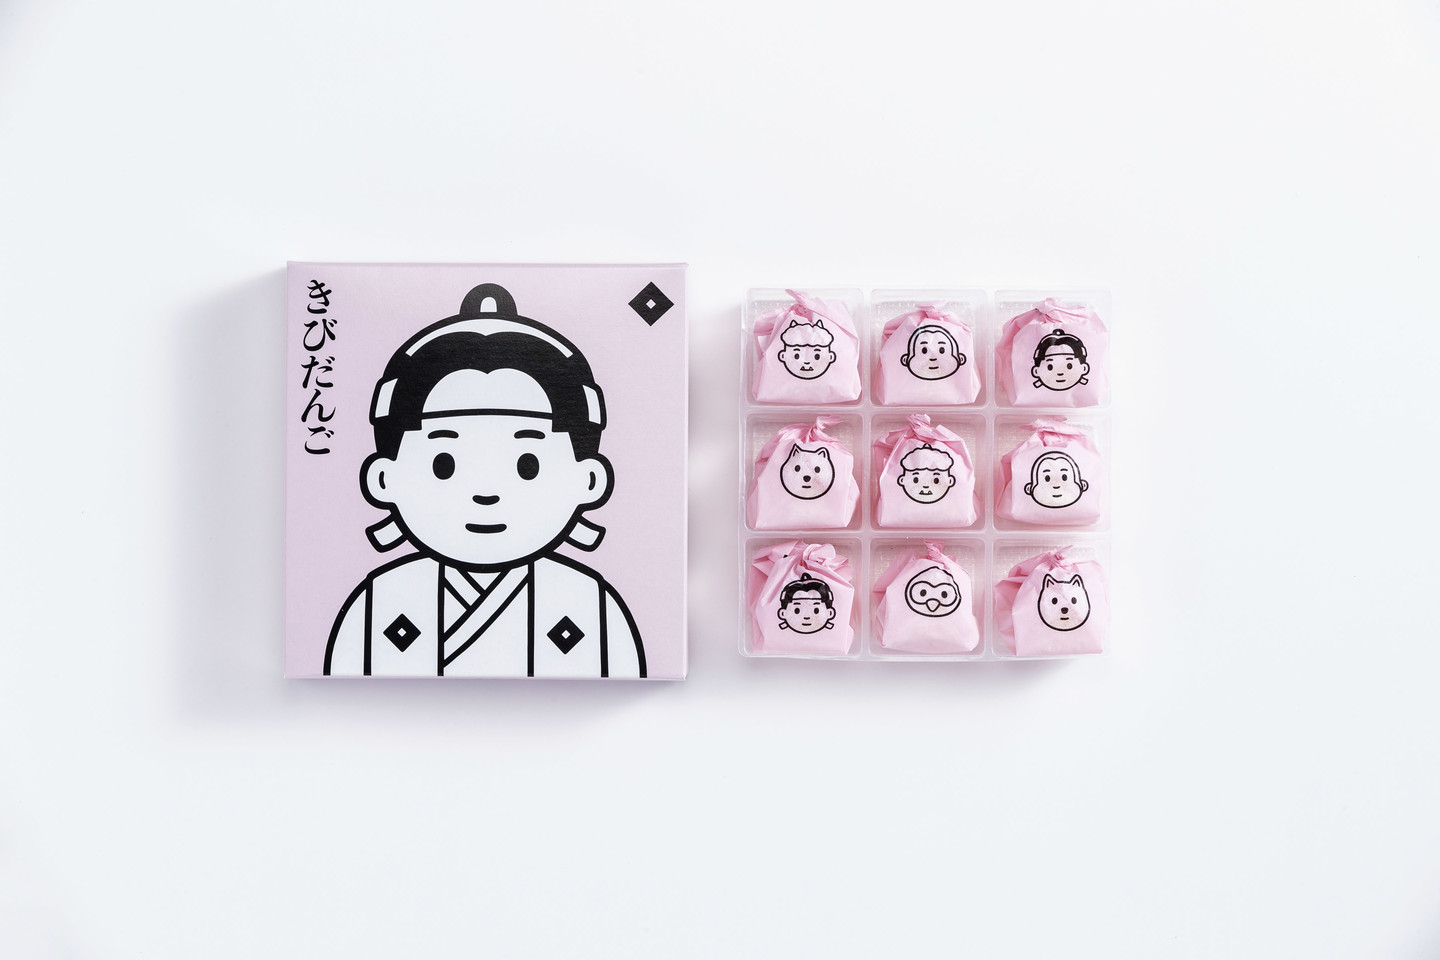 Noritakeが岡山の老舗きびだんごメーカーのパッケージを刷新 桃太郎や鬼のイラストをデザイン